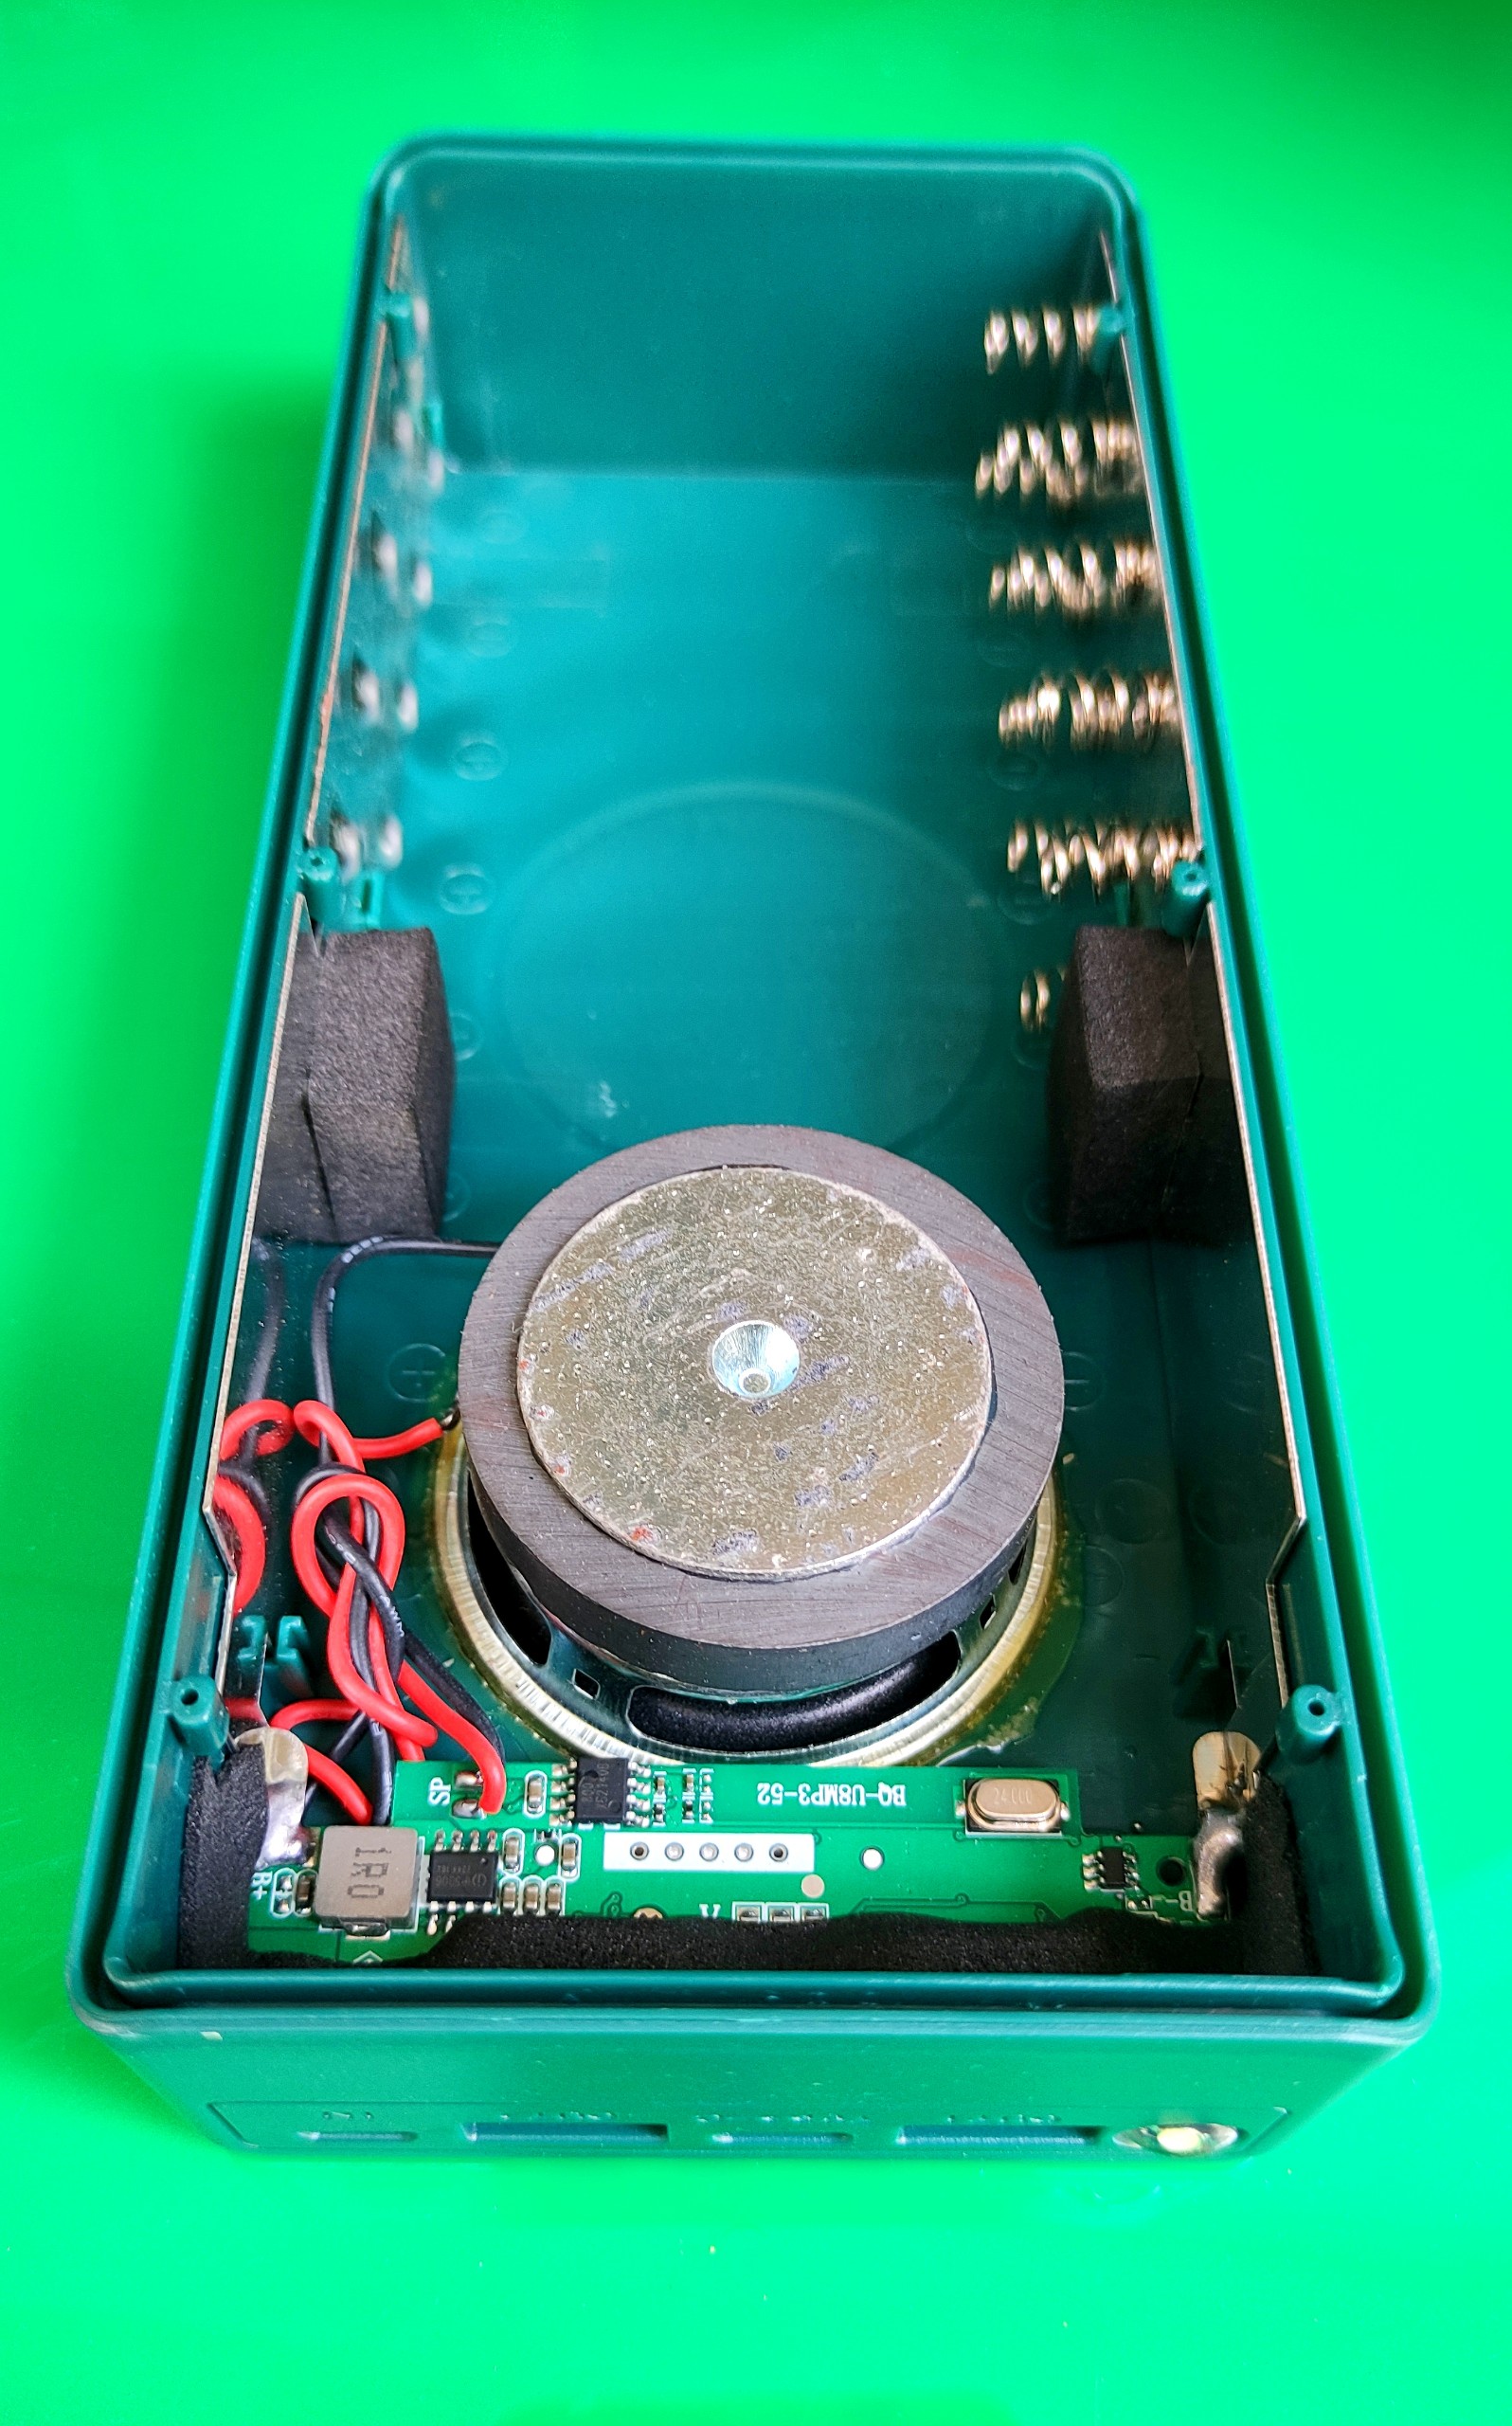 Box sạc dự phòng tích hợp Loa Bluetooth 5.0 âm thanh sống động 10 cell 18650 chất lượng cao màu xanh lá